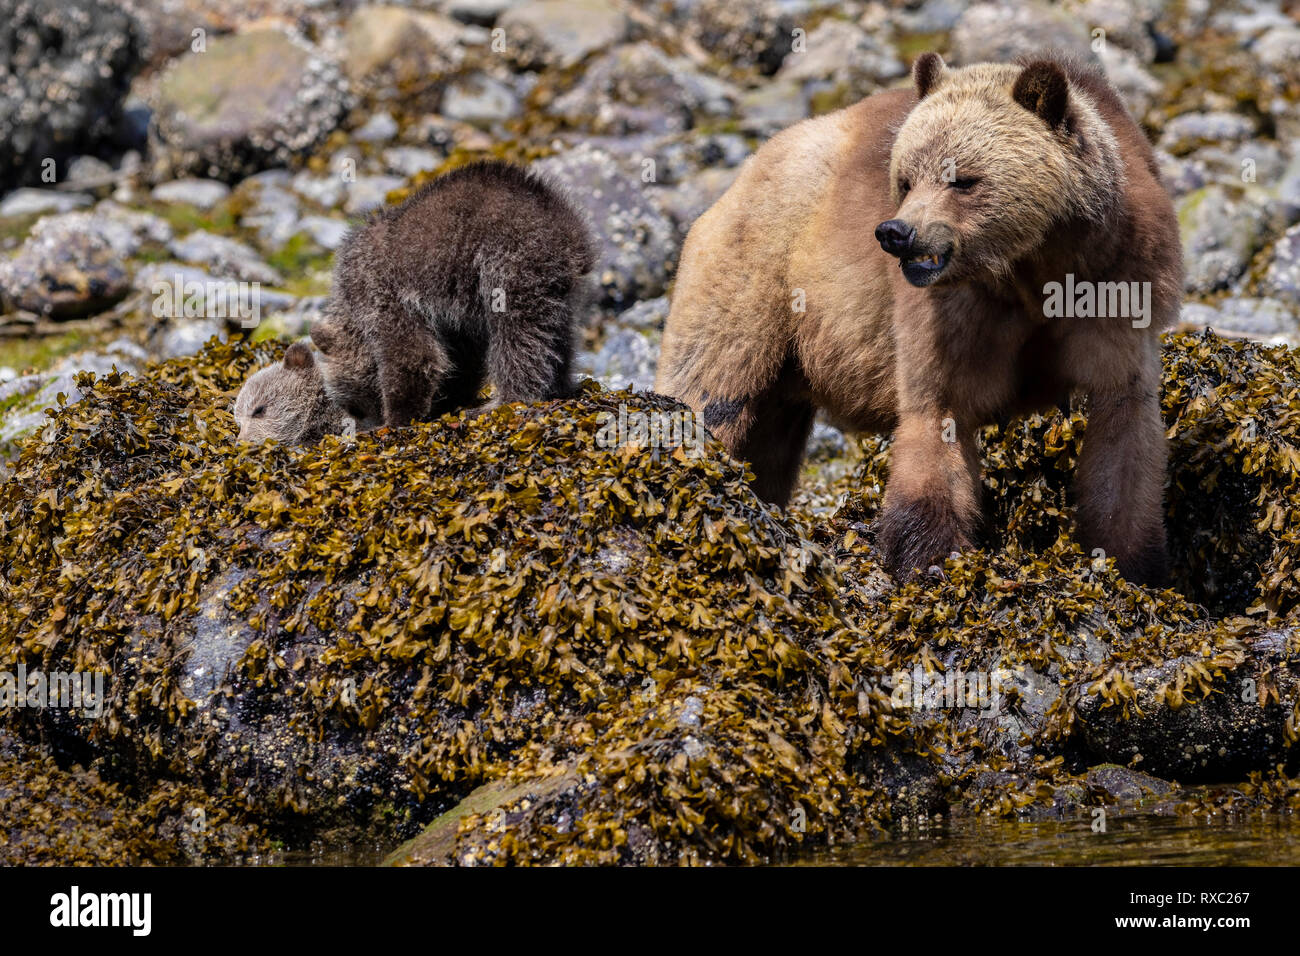 L’ours grizzli (Ursus arctos horribilis) truie avec deux petits qui se régalent le long du rivage à marée basse à Glendale Cove, Knight Inlet, territoire des Premières nations, Colombie-Britannique, Canada. Banque D'Images